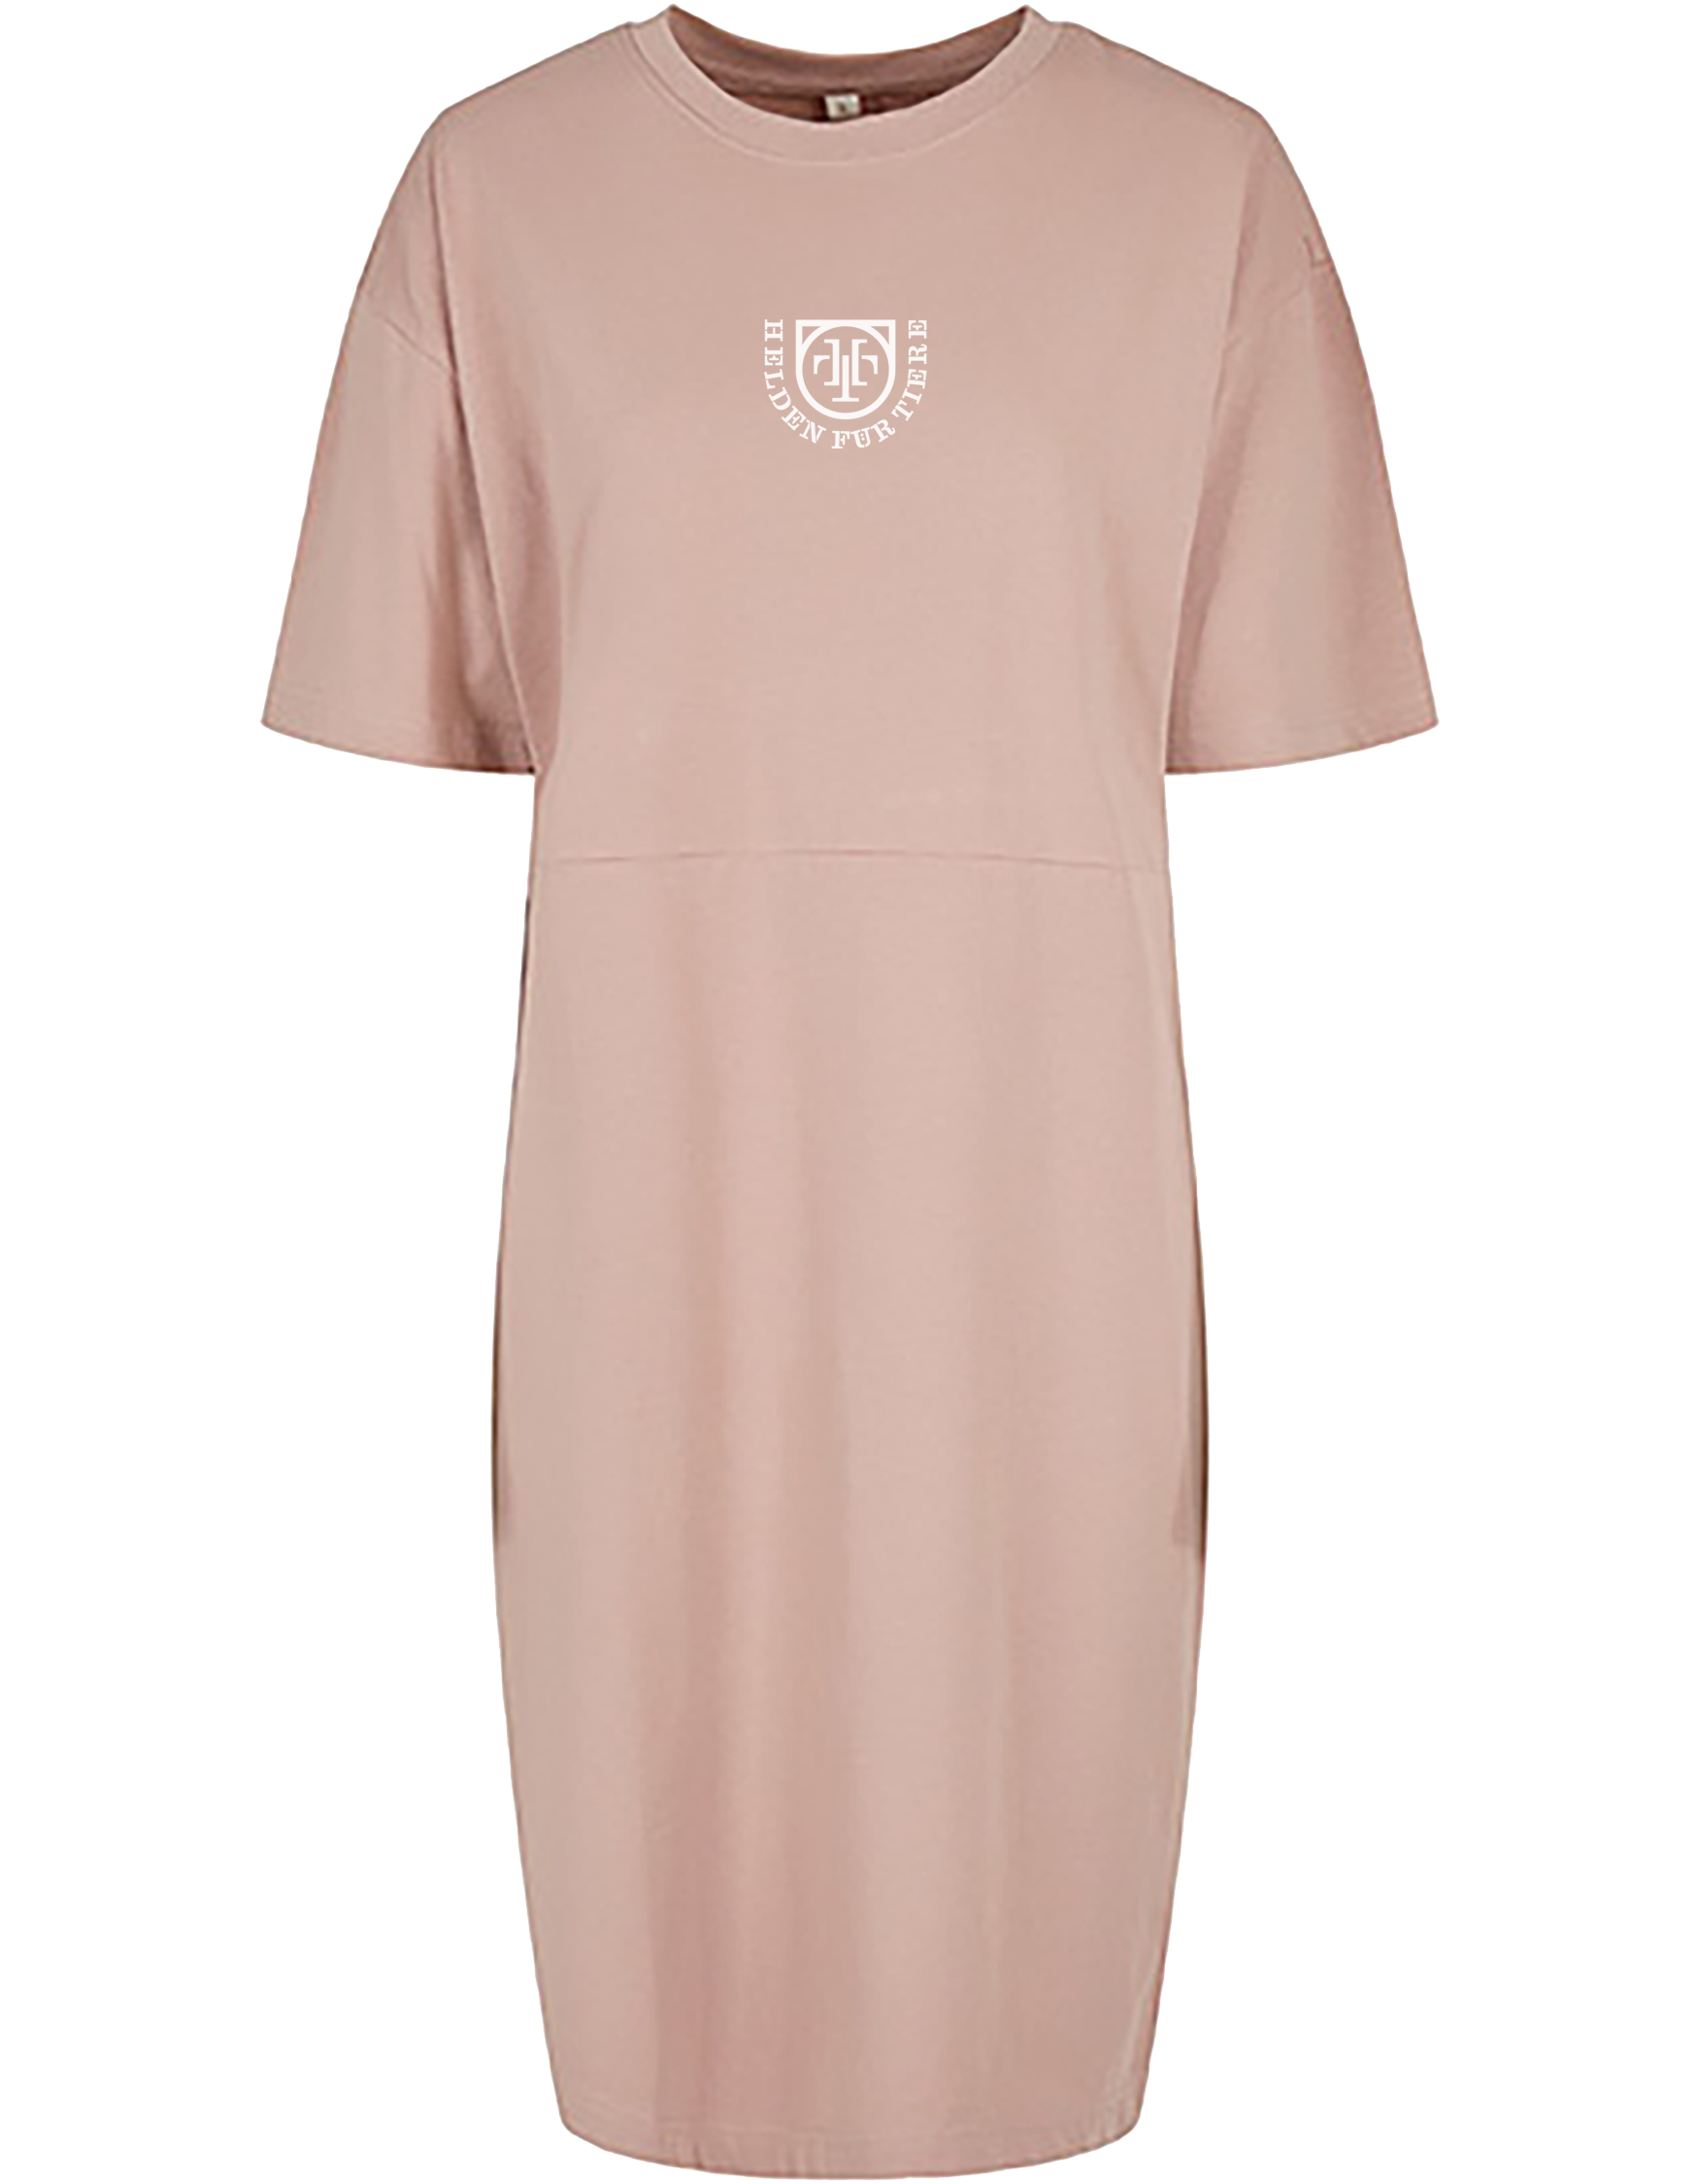 HFT Ladies organic Dress Tee (rose) 